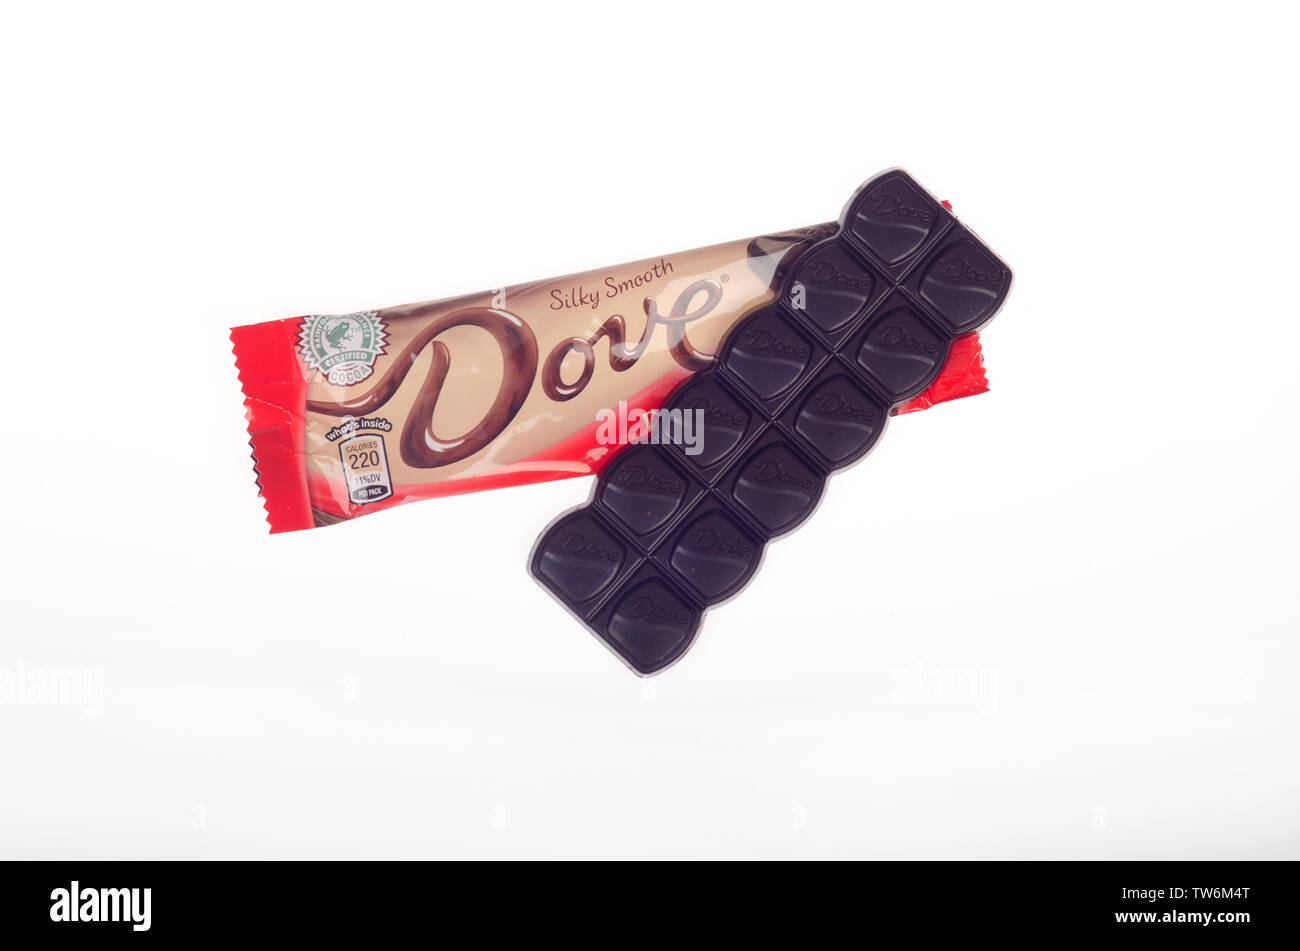 Dove dark chocolate candy bar par Mars, Inc. avec l'emballage ouvert Banque D'Images